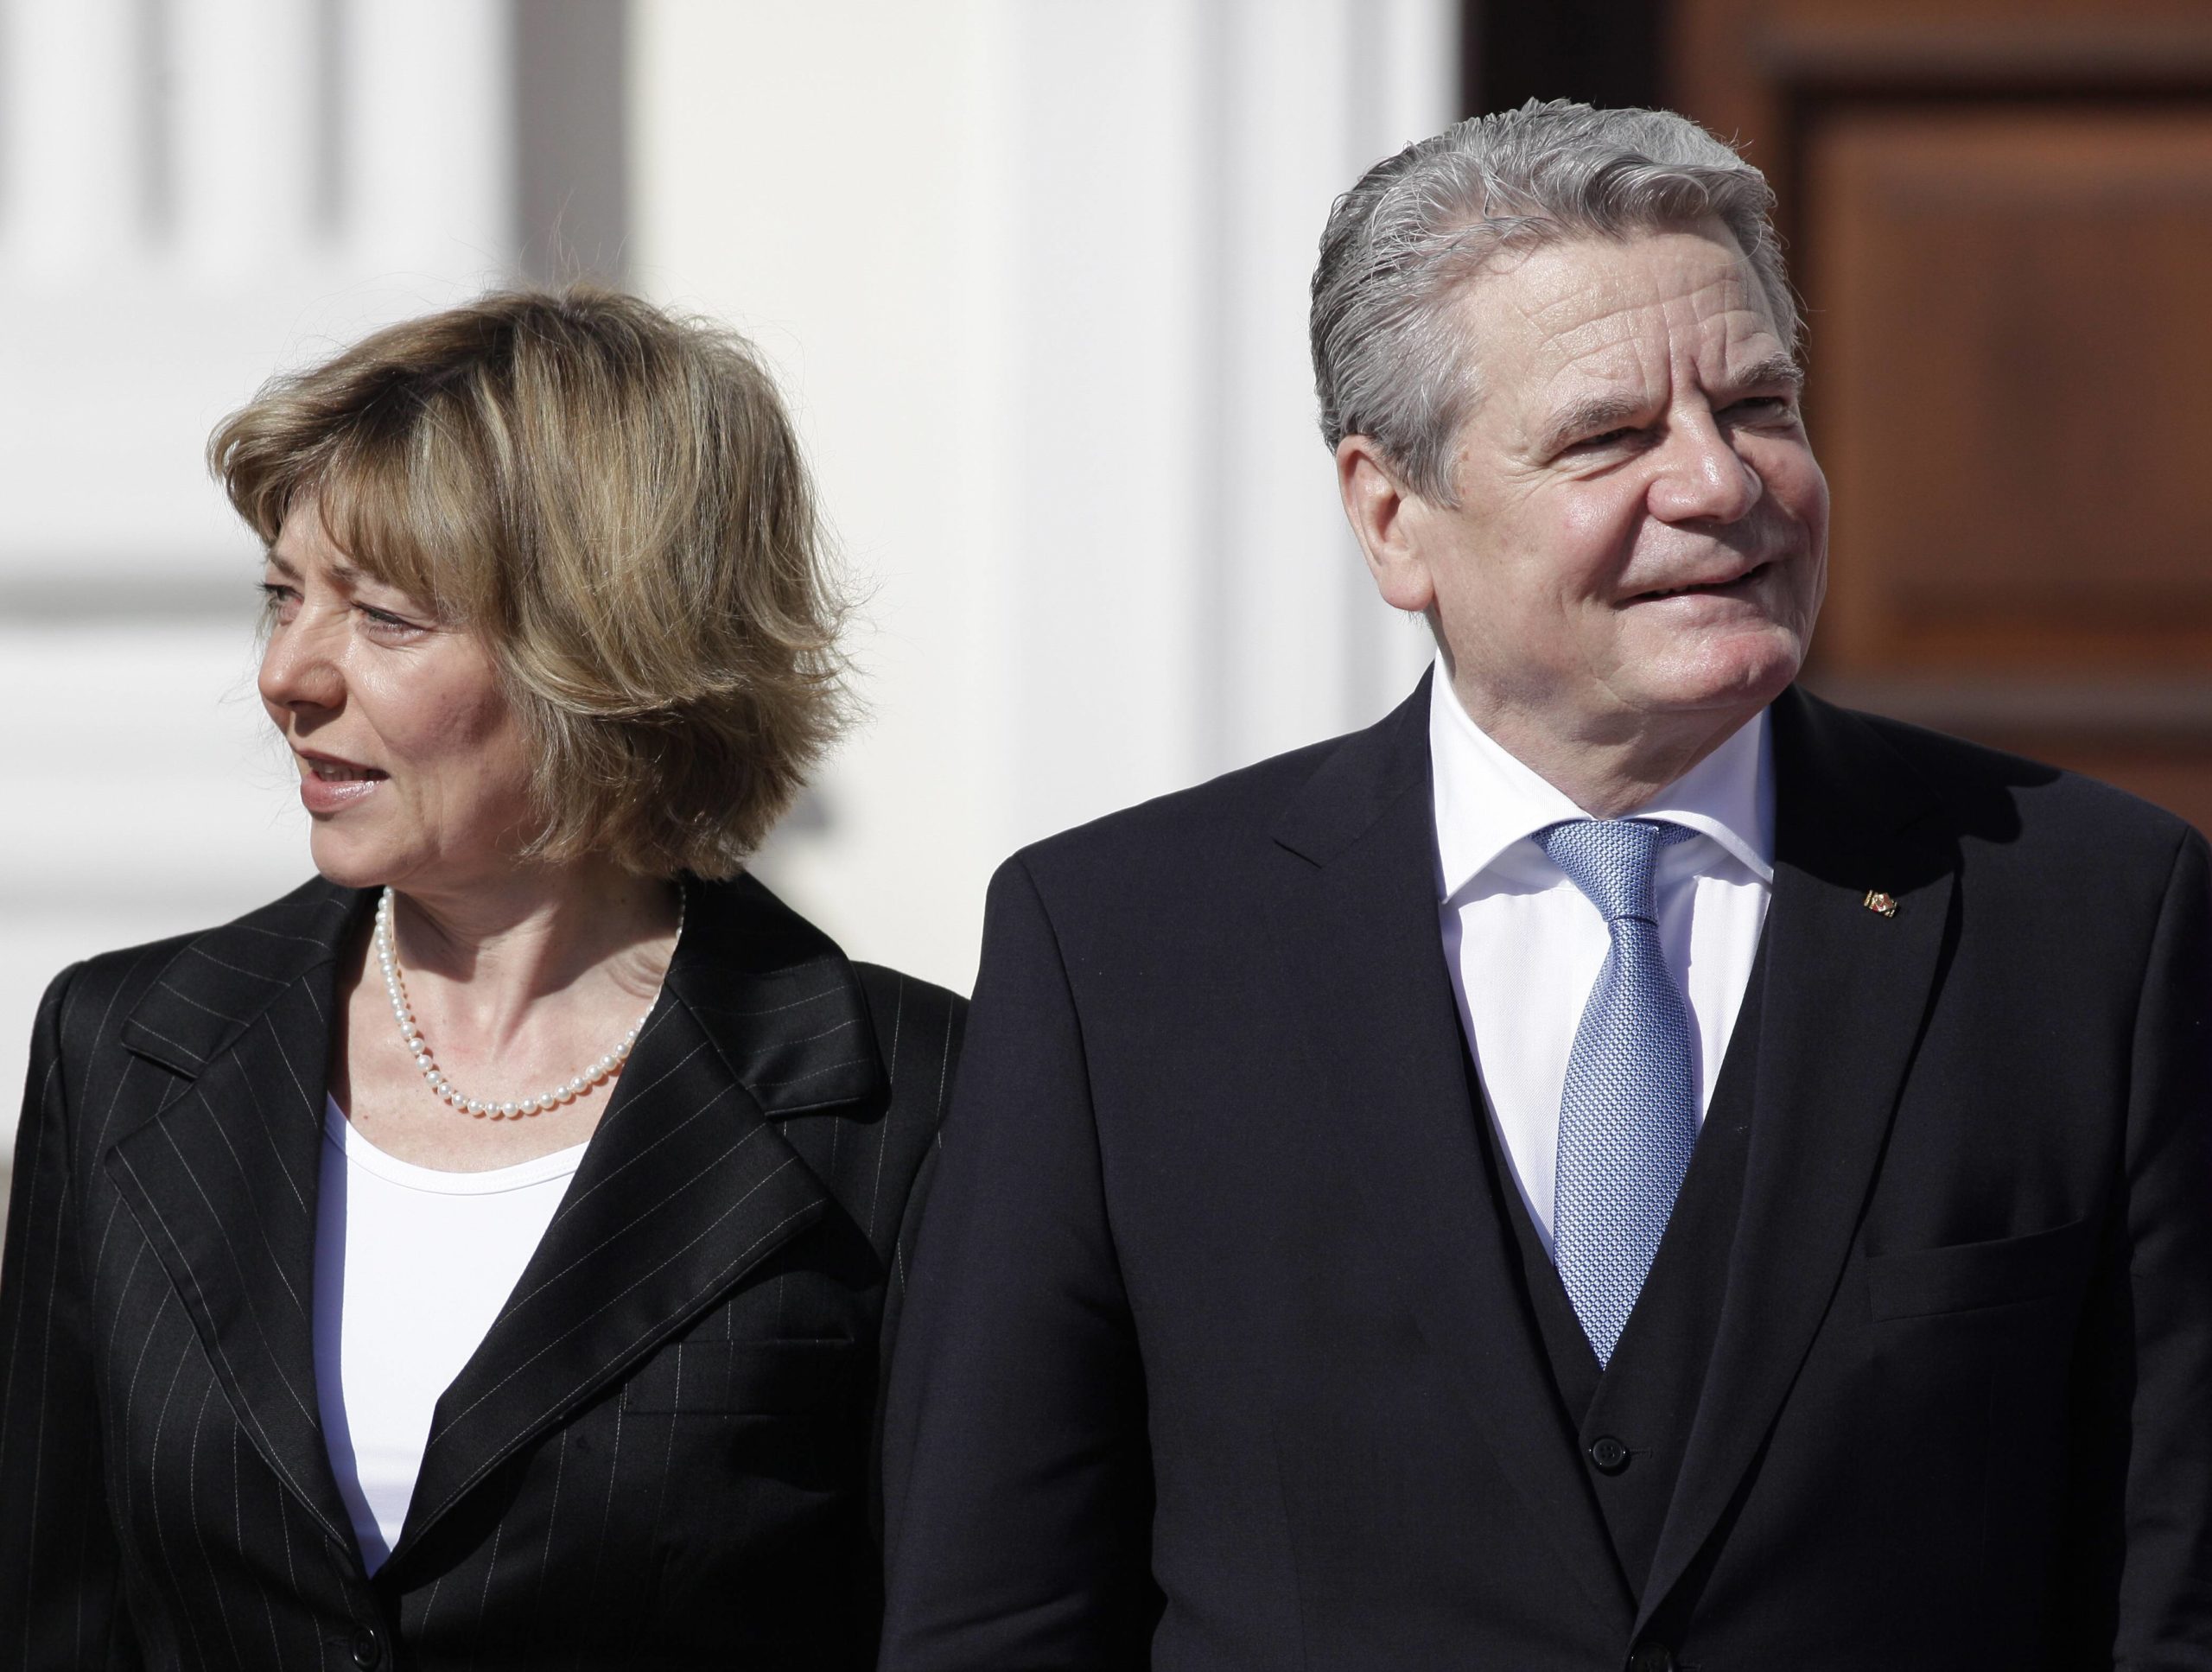 Bundespräsident Joachim Gauck und seine Lebensgefährtin Daniela Schadt bei der Amtseinführung in Schloss Bellevue, 19. März 2012. Foto: Imago/Metodi Popow